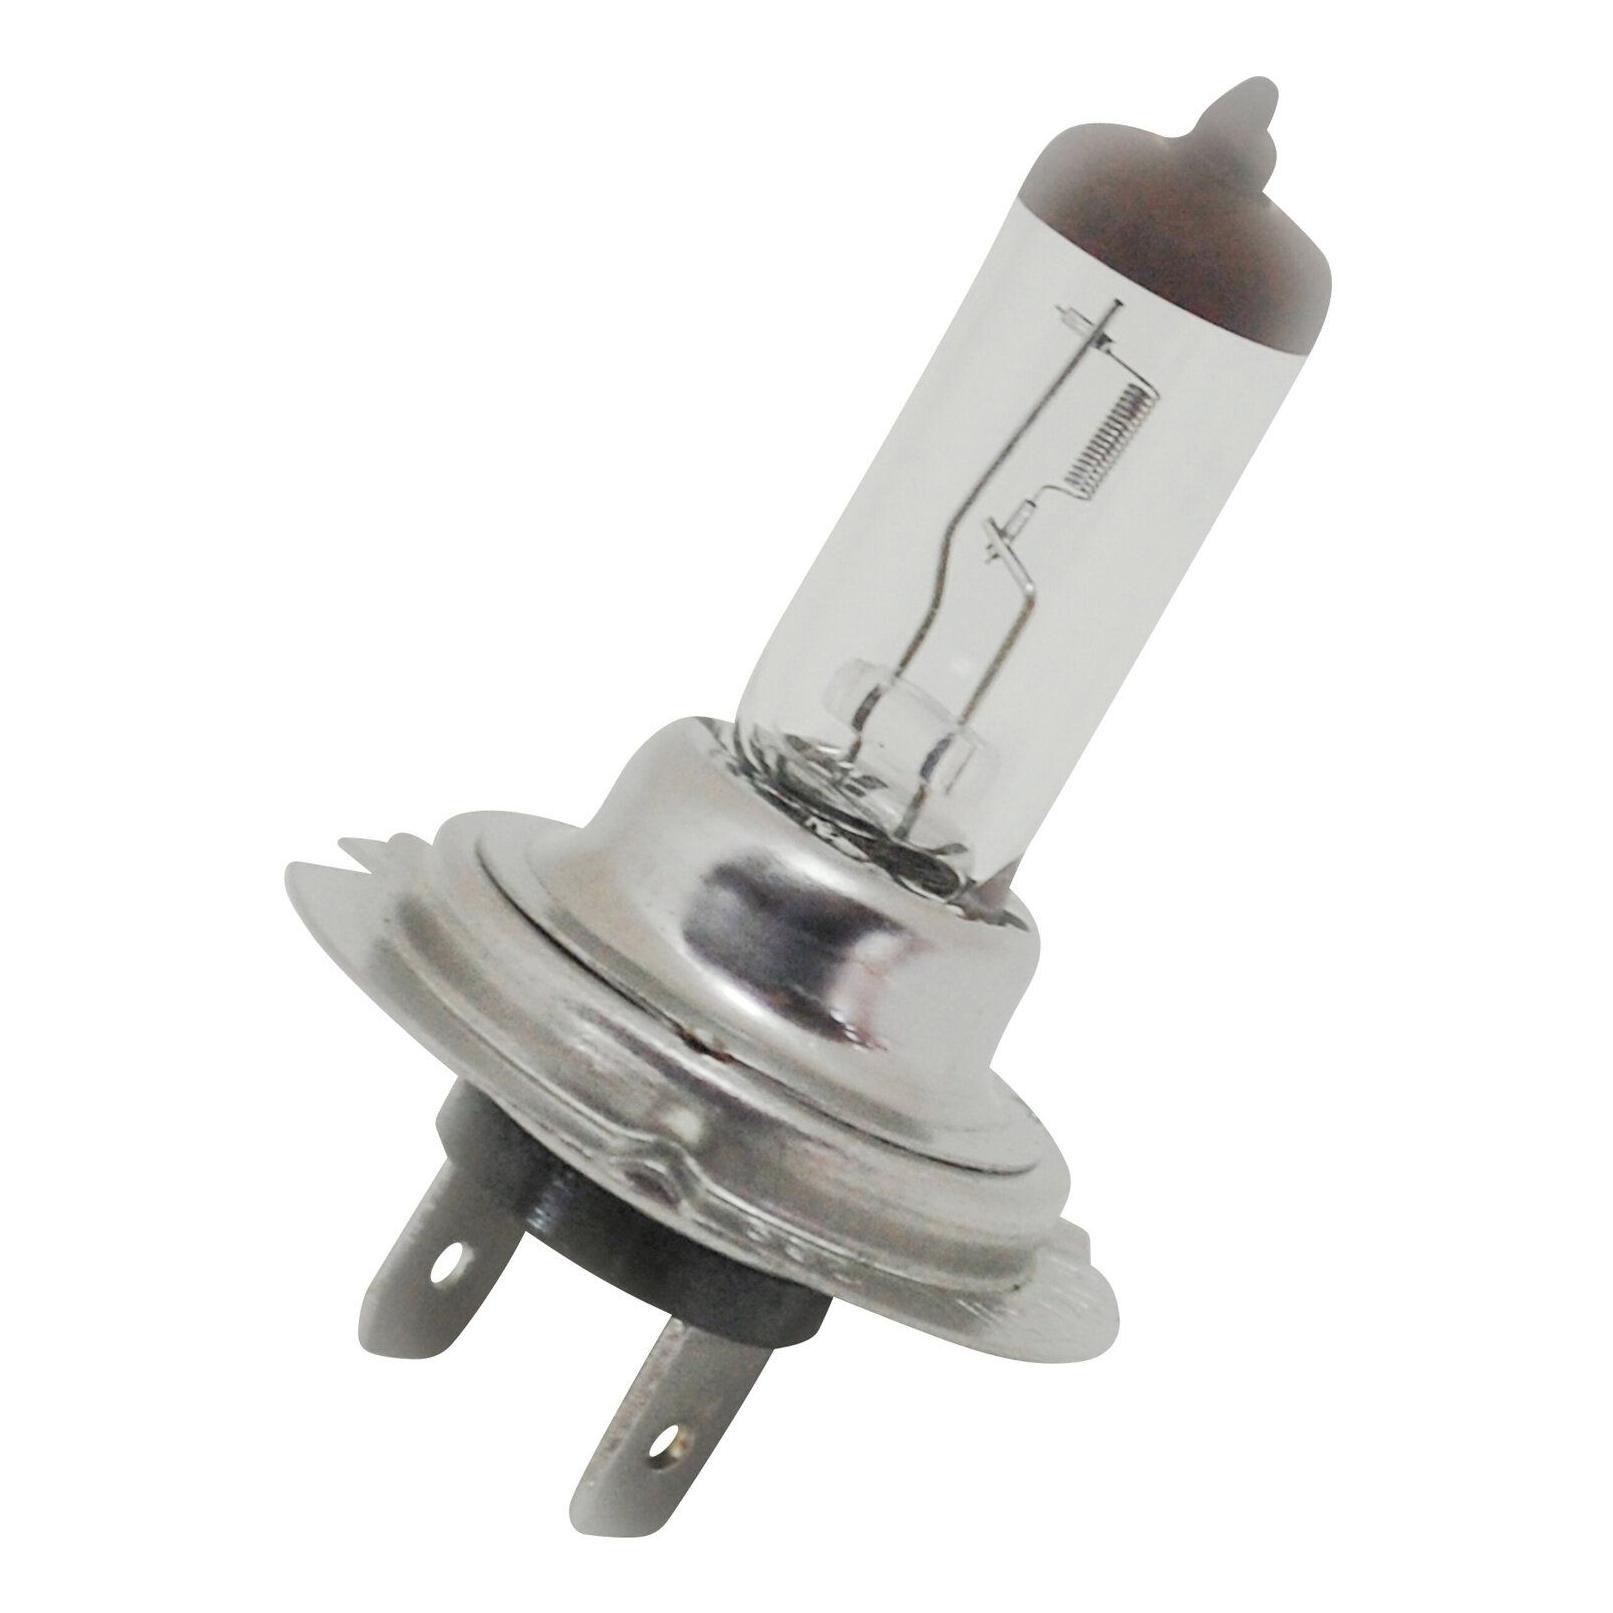 Lampe / Projecteur - Ampoule 12V 55W H7 - RMS - caractères E1 | Heavy  Tuned: Pièces détachées bon marché pour scooters, vélos, motos et Vespa